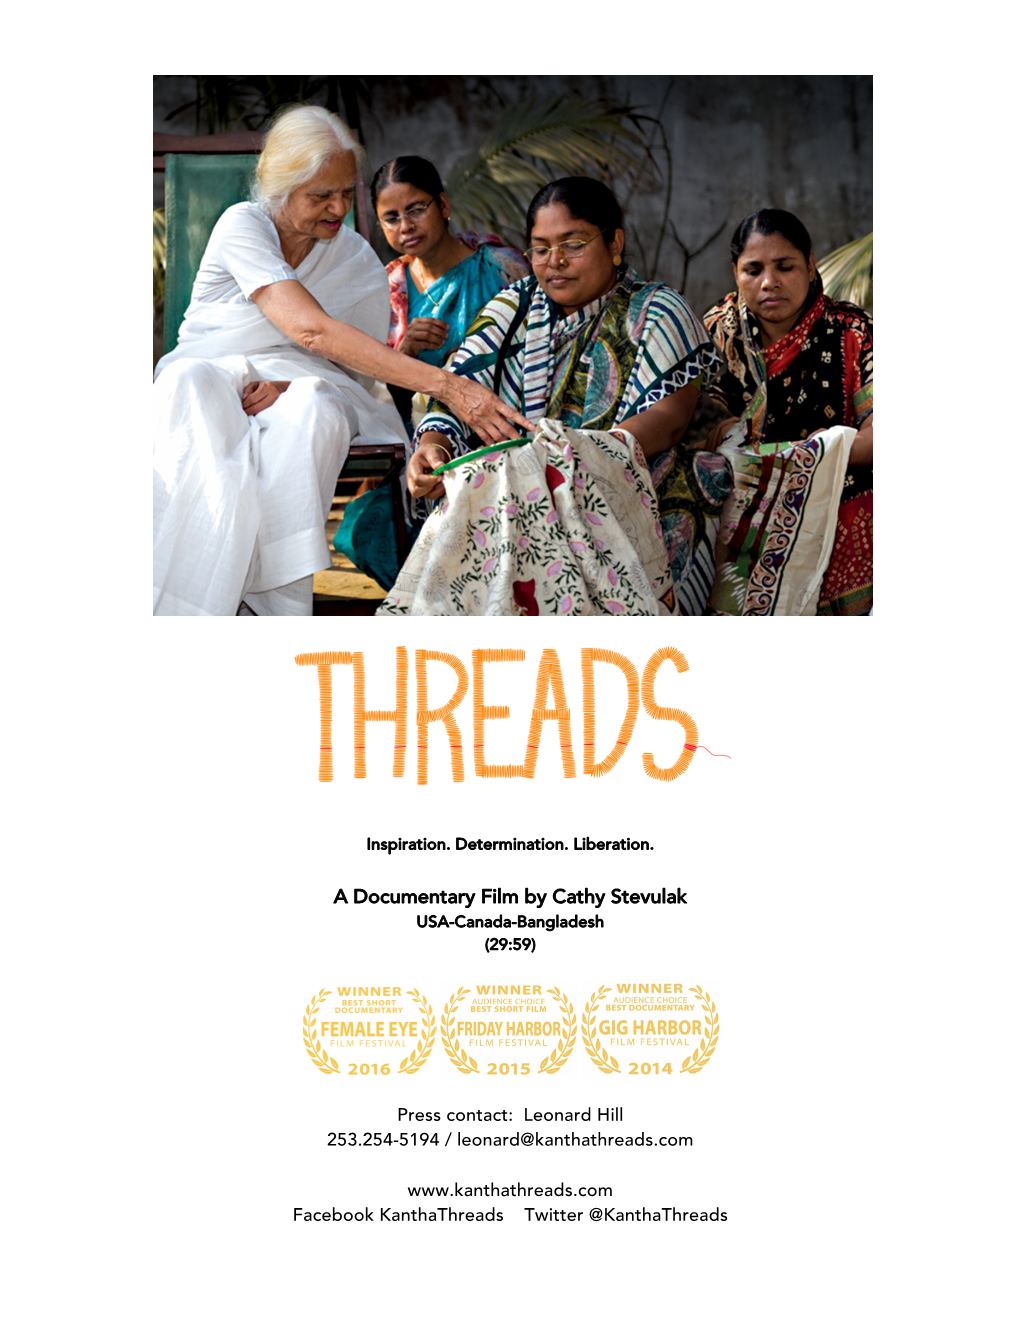 A Documentary Film by Cathy Stevulak USA-Canada-Bangladesh (29:59)